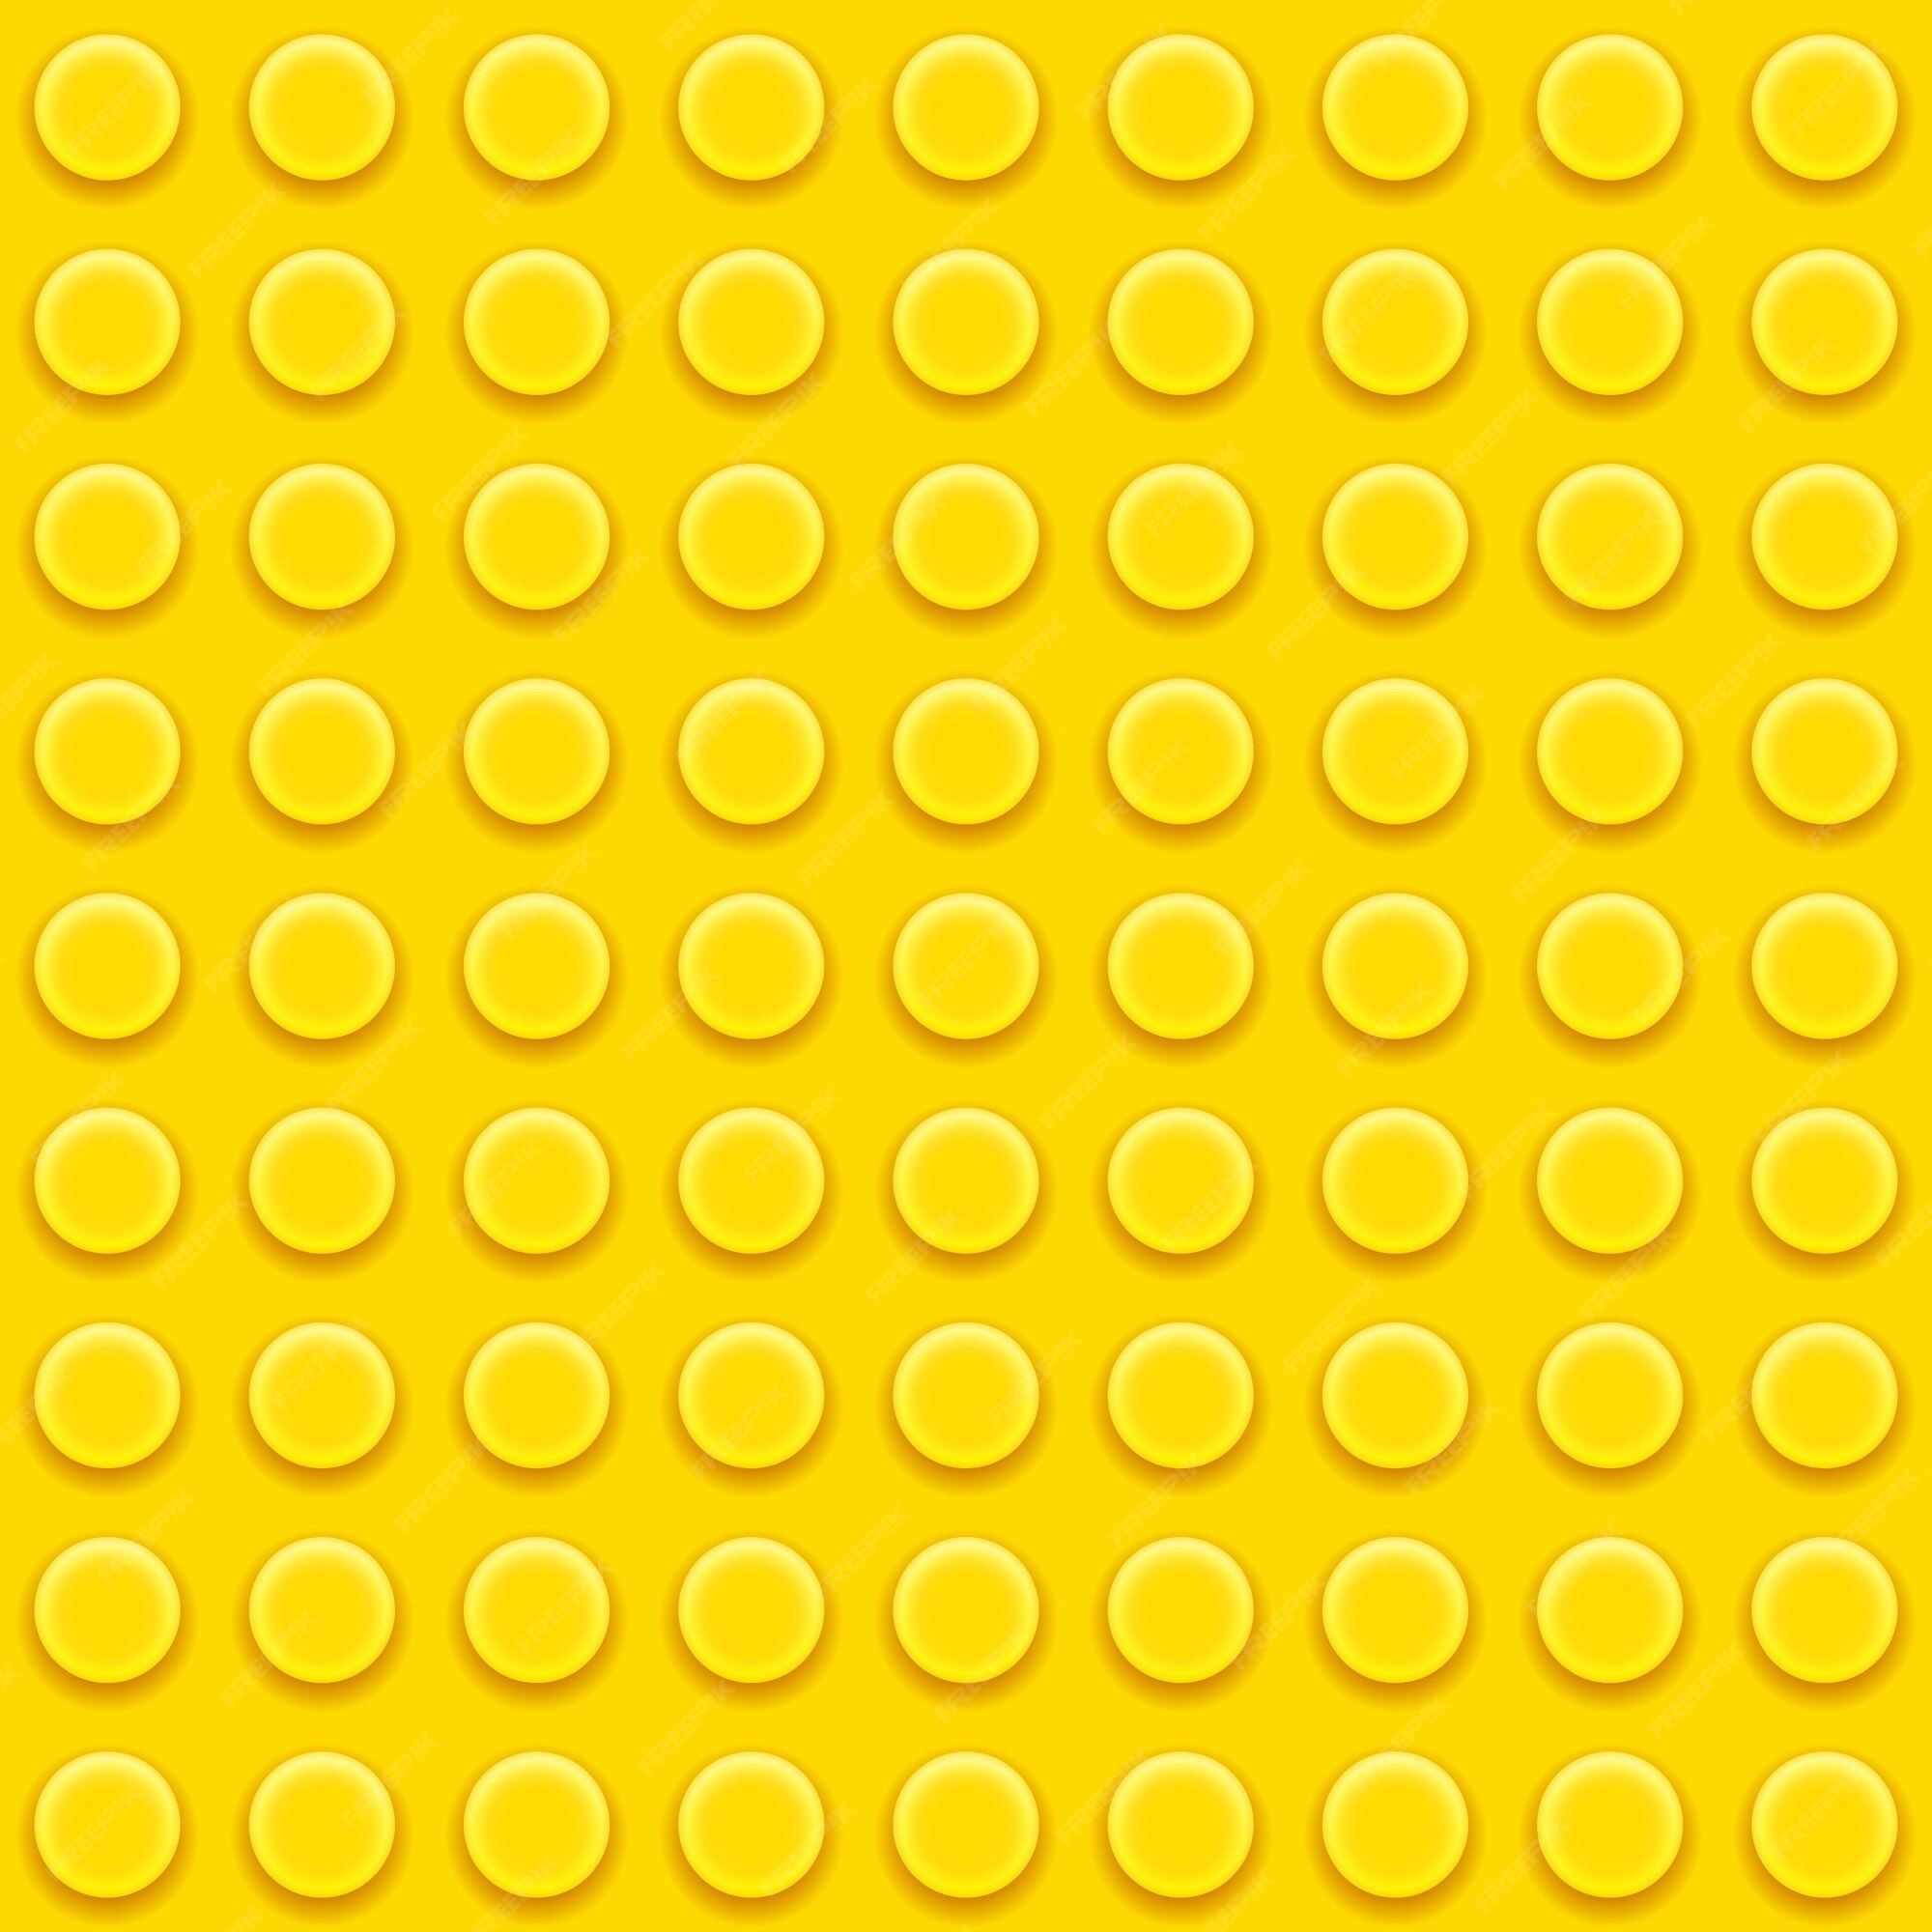 gennemførlig Ære Forstyrre Lego Pattern Images - Free Download on Freepik